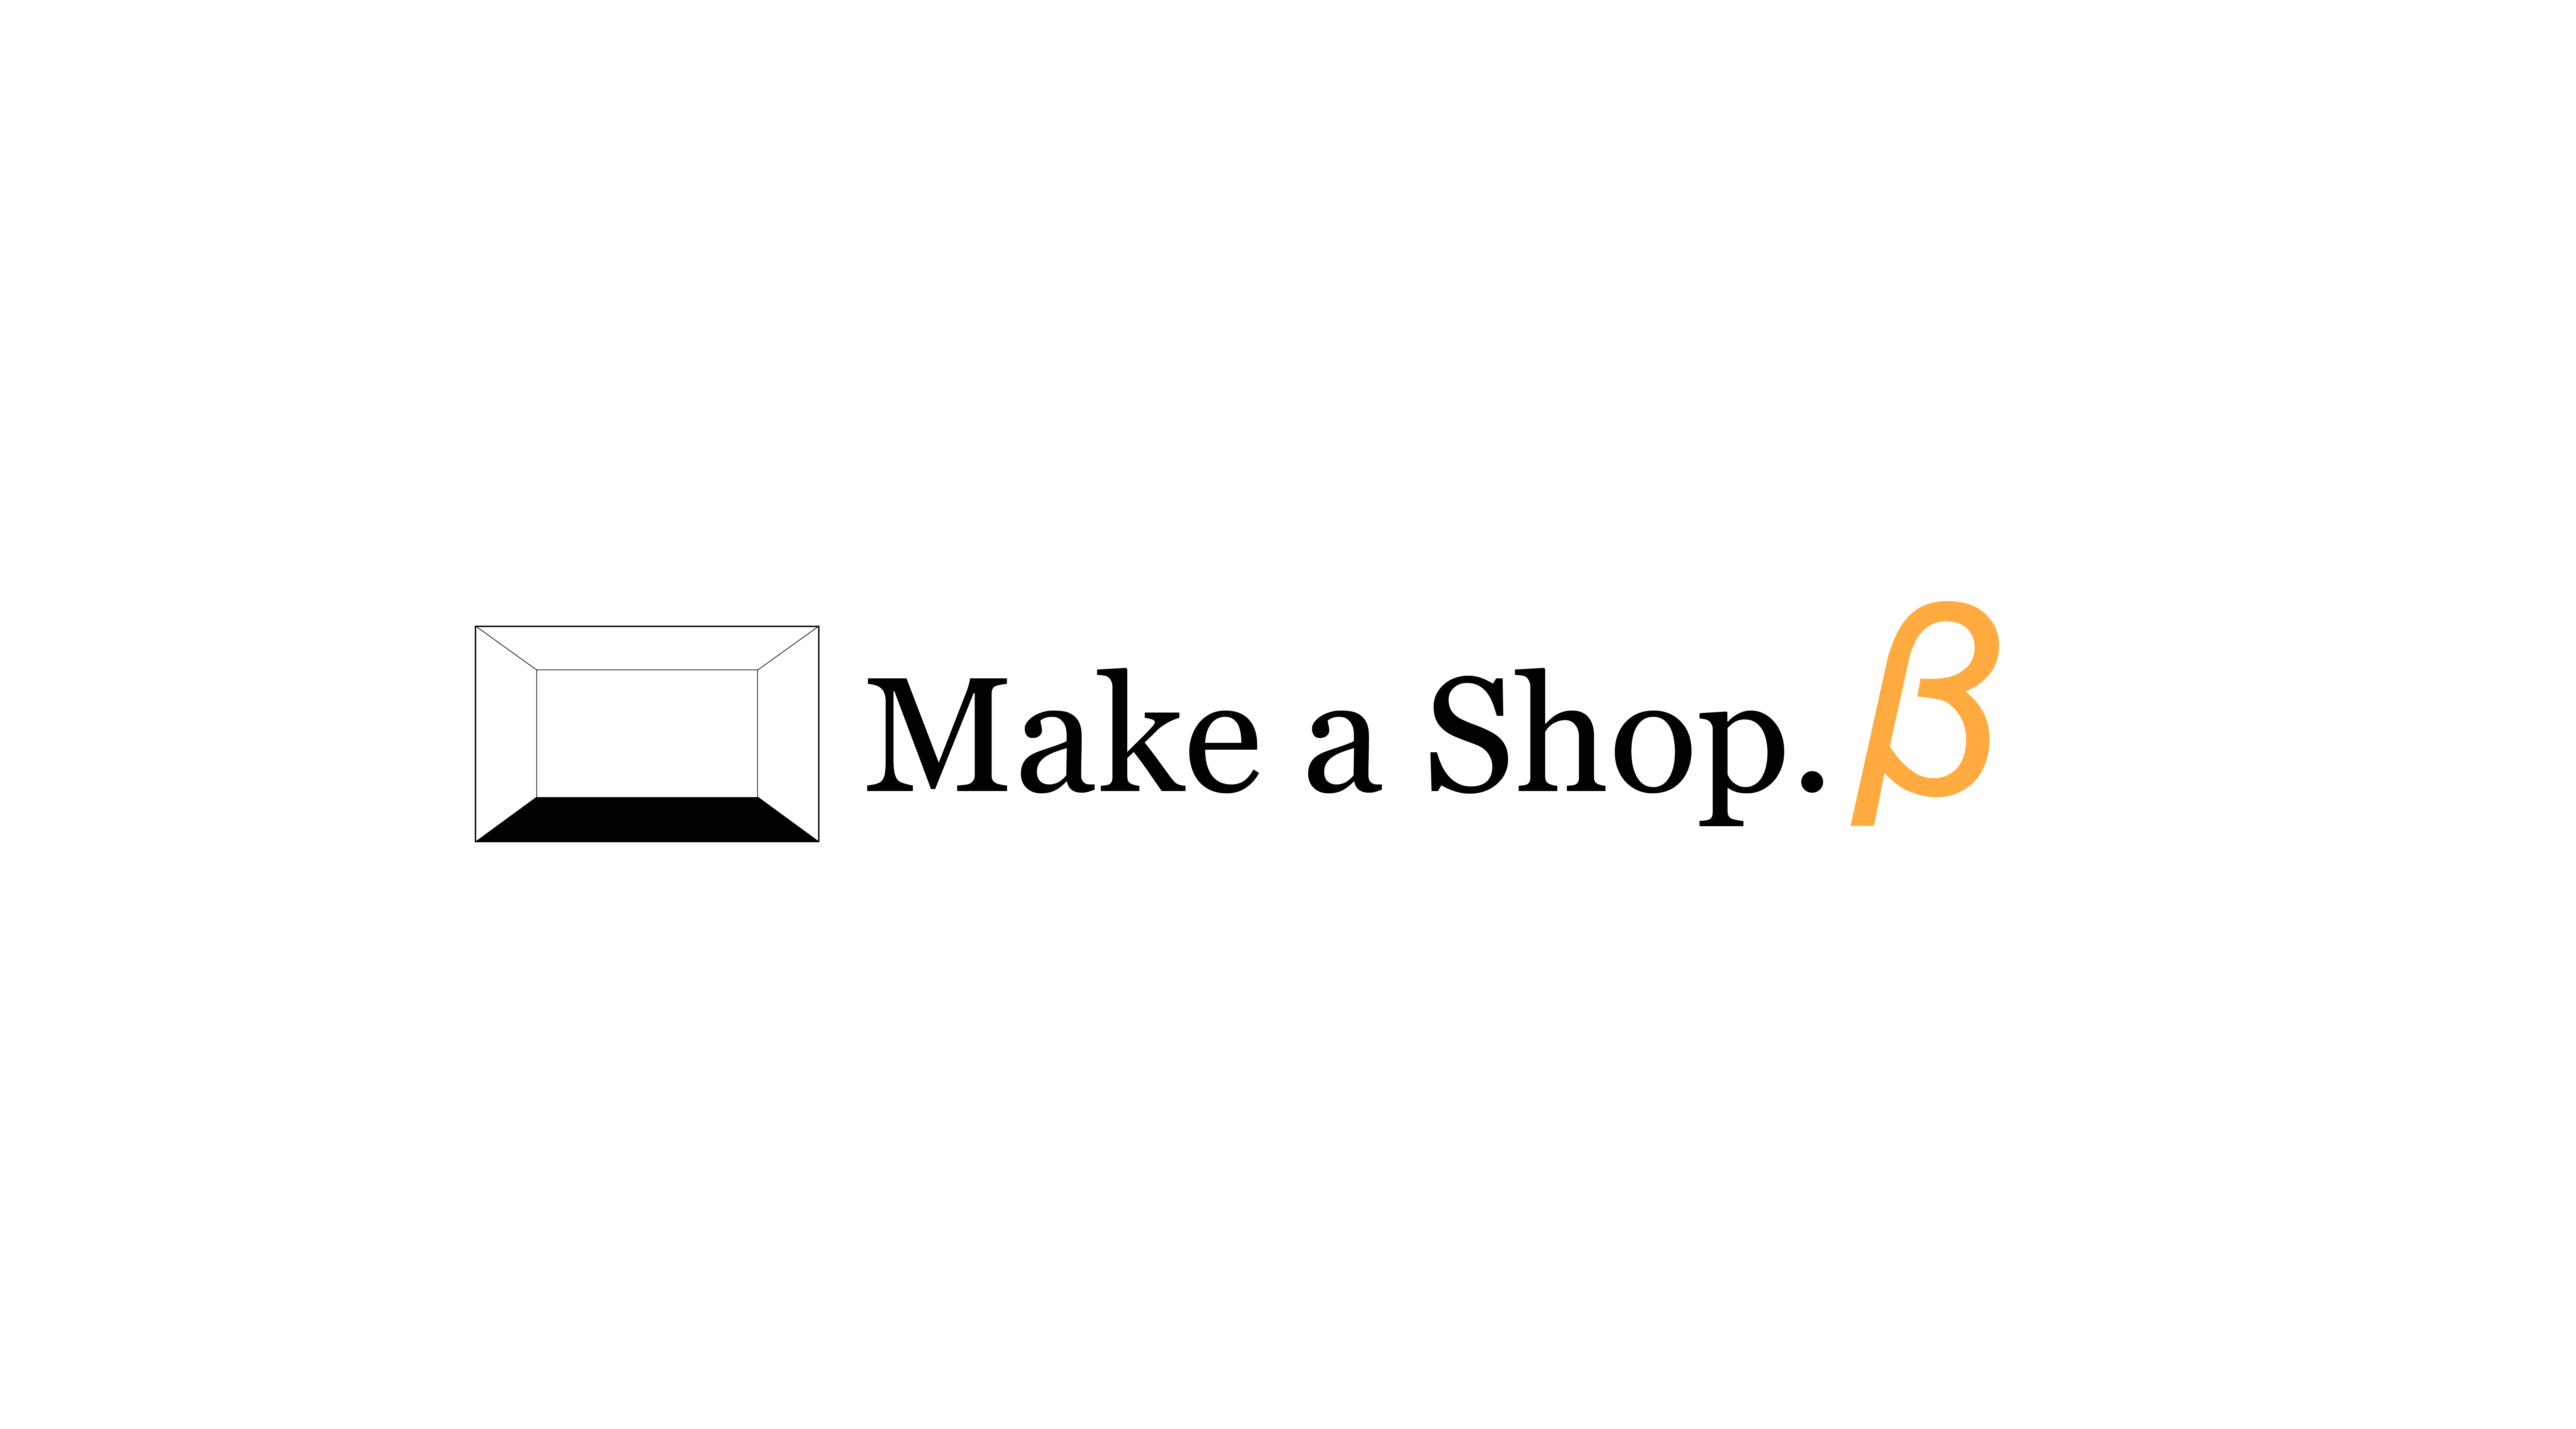 物件探しから店舗施工、開業後の「繁盛」まで伴走。株式会社Mabが建築とITの力で事業主様をサポートする「Make a Shop β」を提供開始